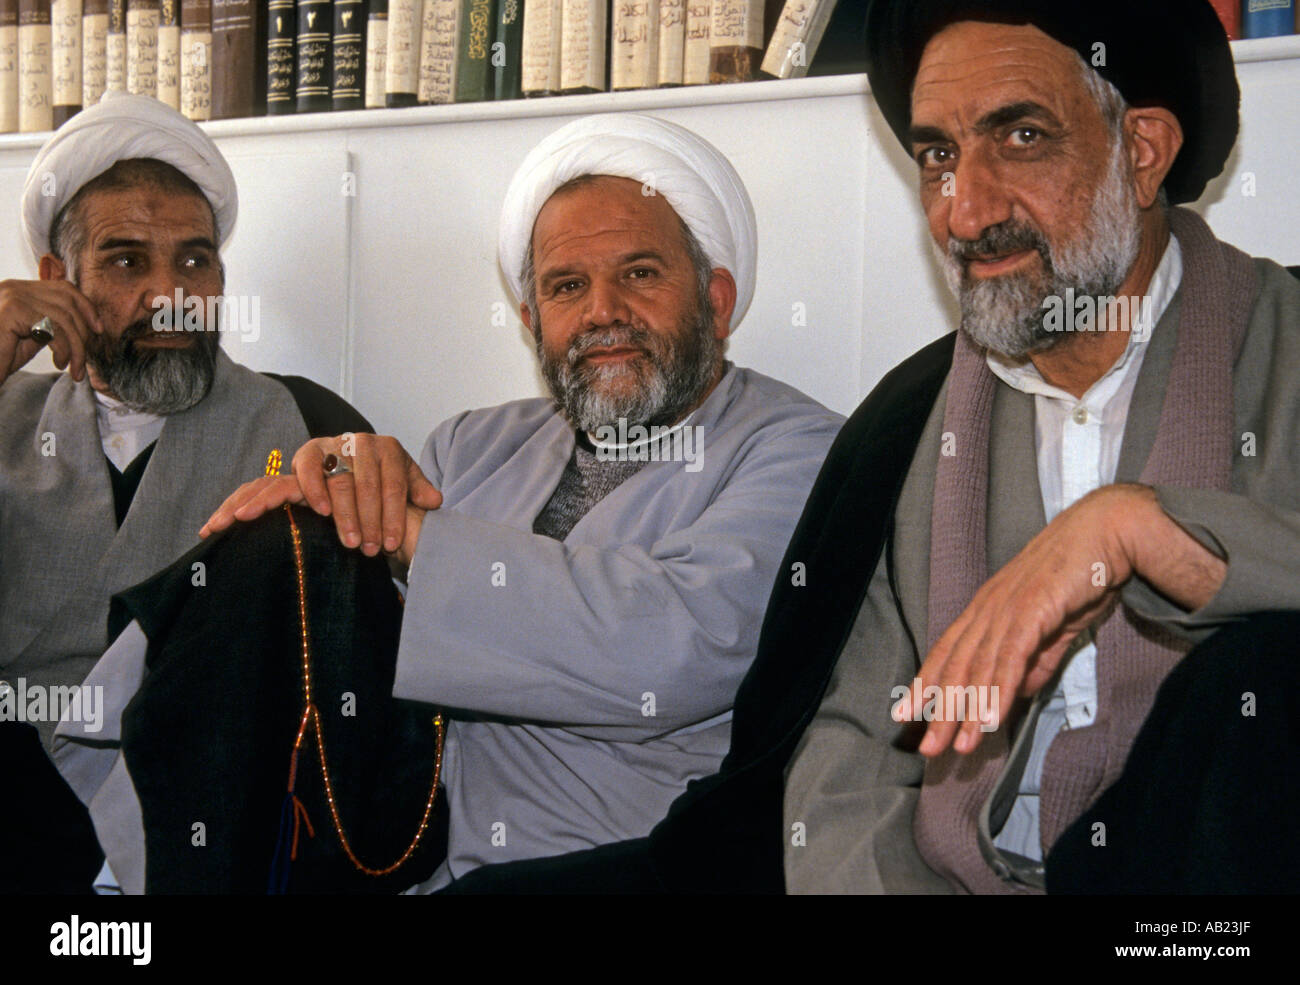 Spécialistes de l'Islam chiite des mollahs dans la madrasa, portrait, Qom, Iran, Moyen-Orient Banque D'Images